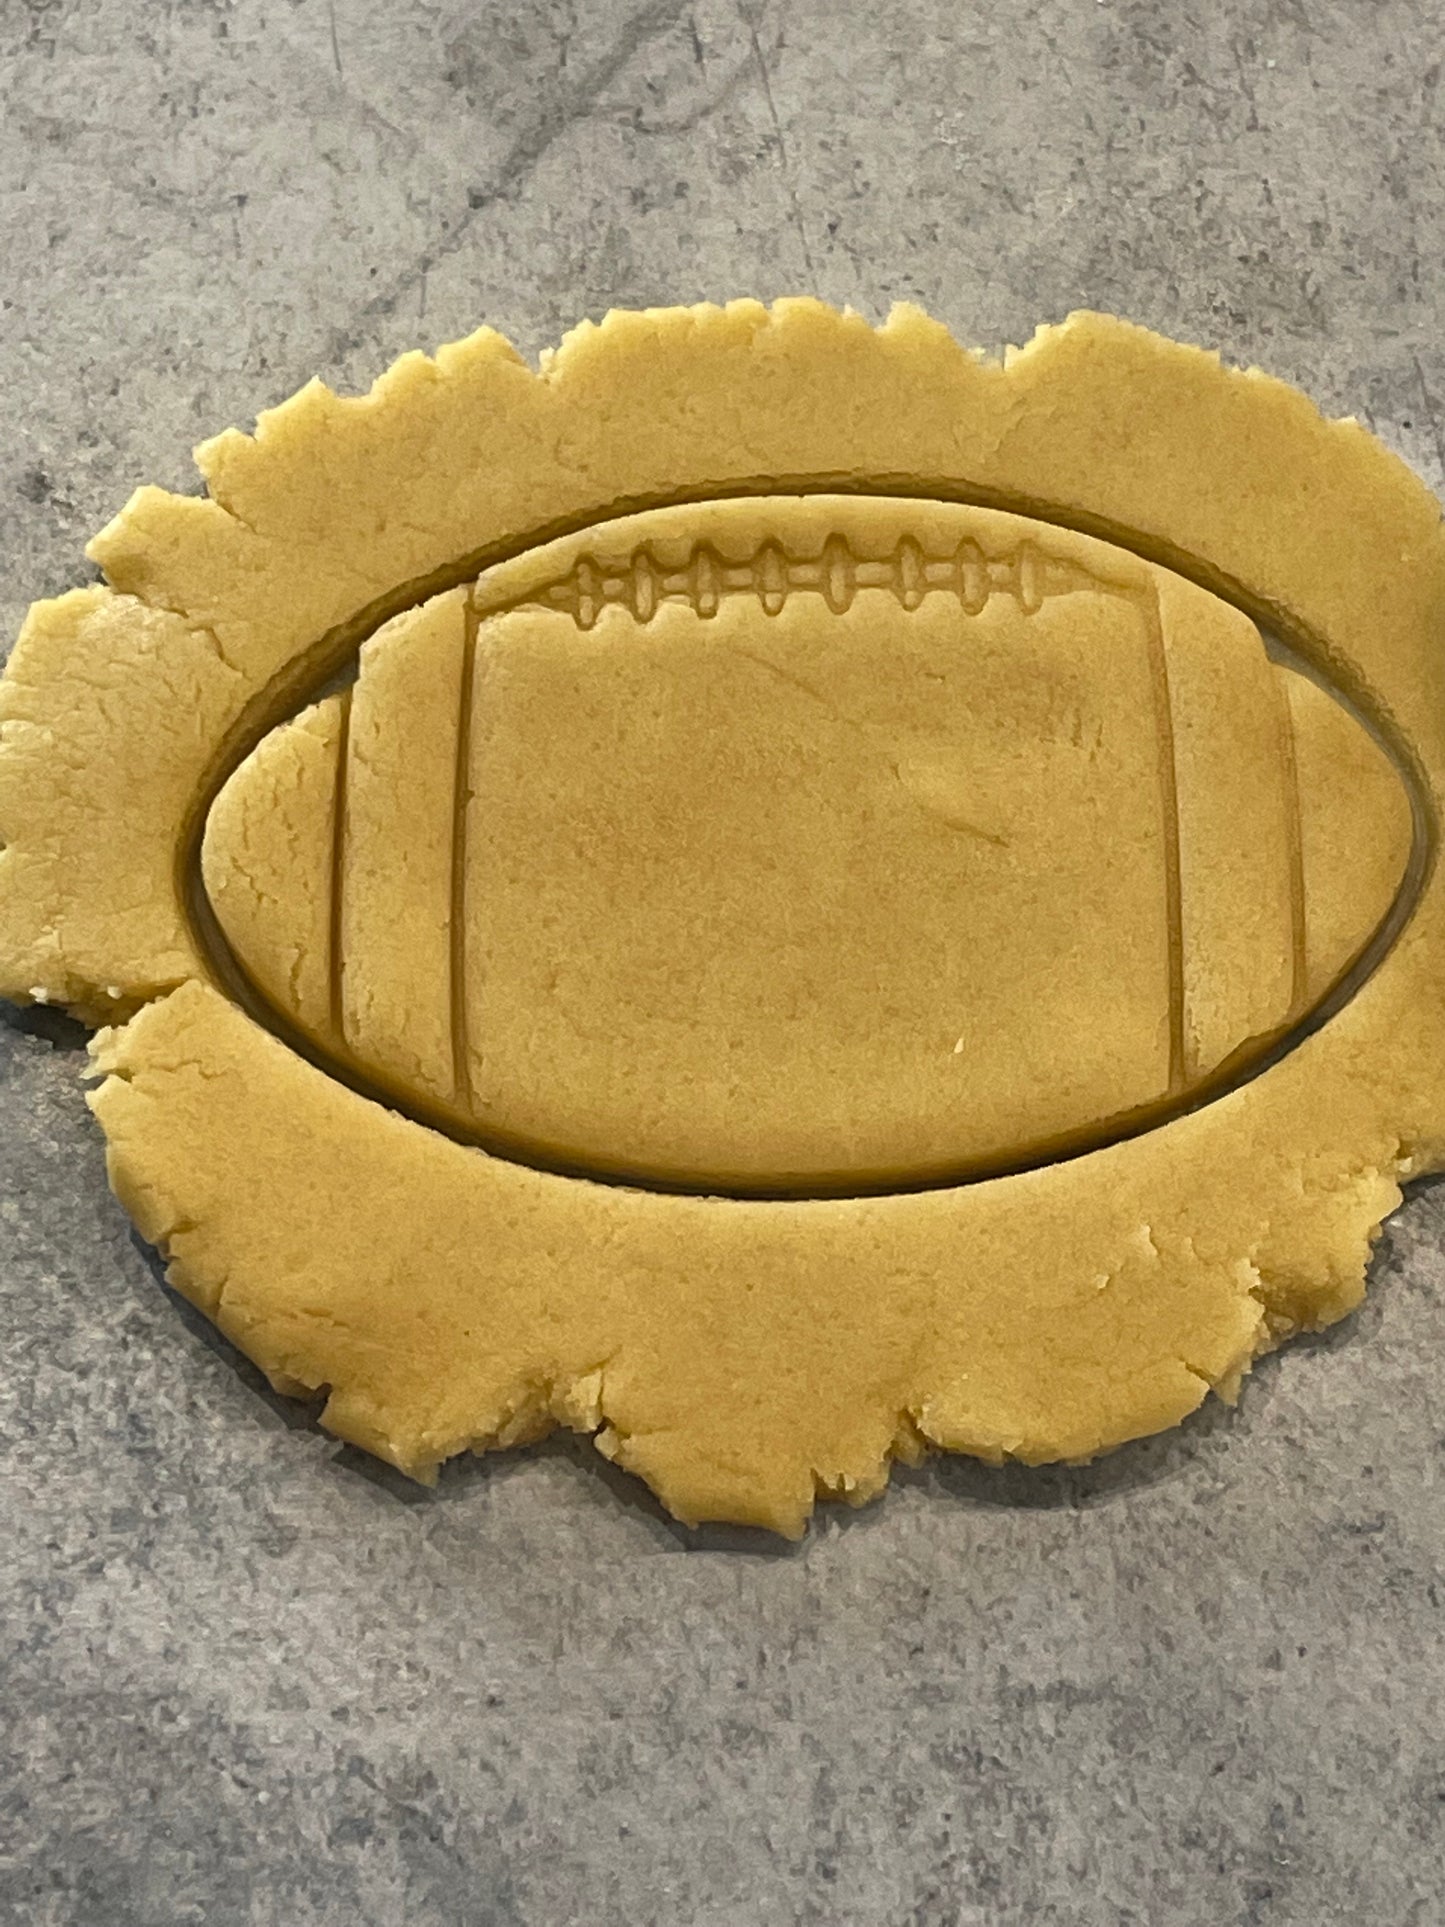 Emporte pièce Ballon NFL - Forme - pour la réalisaton de biscuit sablé, patisserie, pate à sucre -Décoration gateau-Fait maison- ELACE